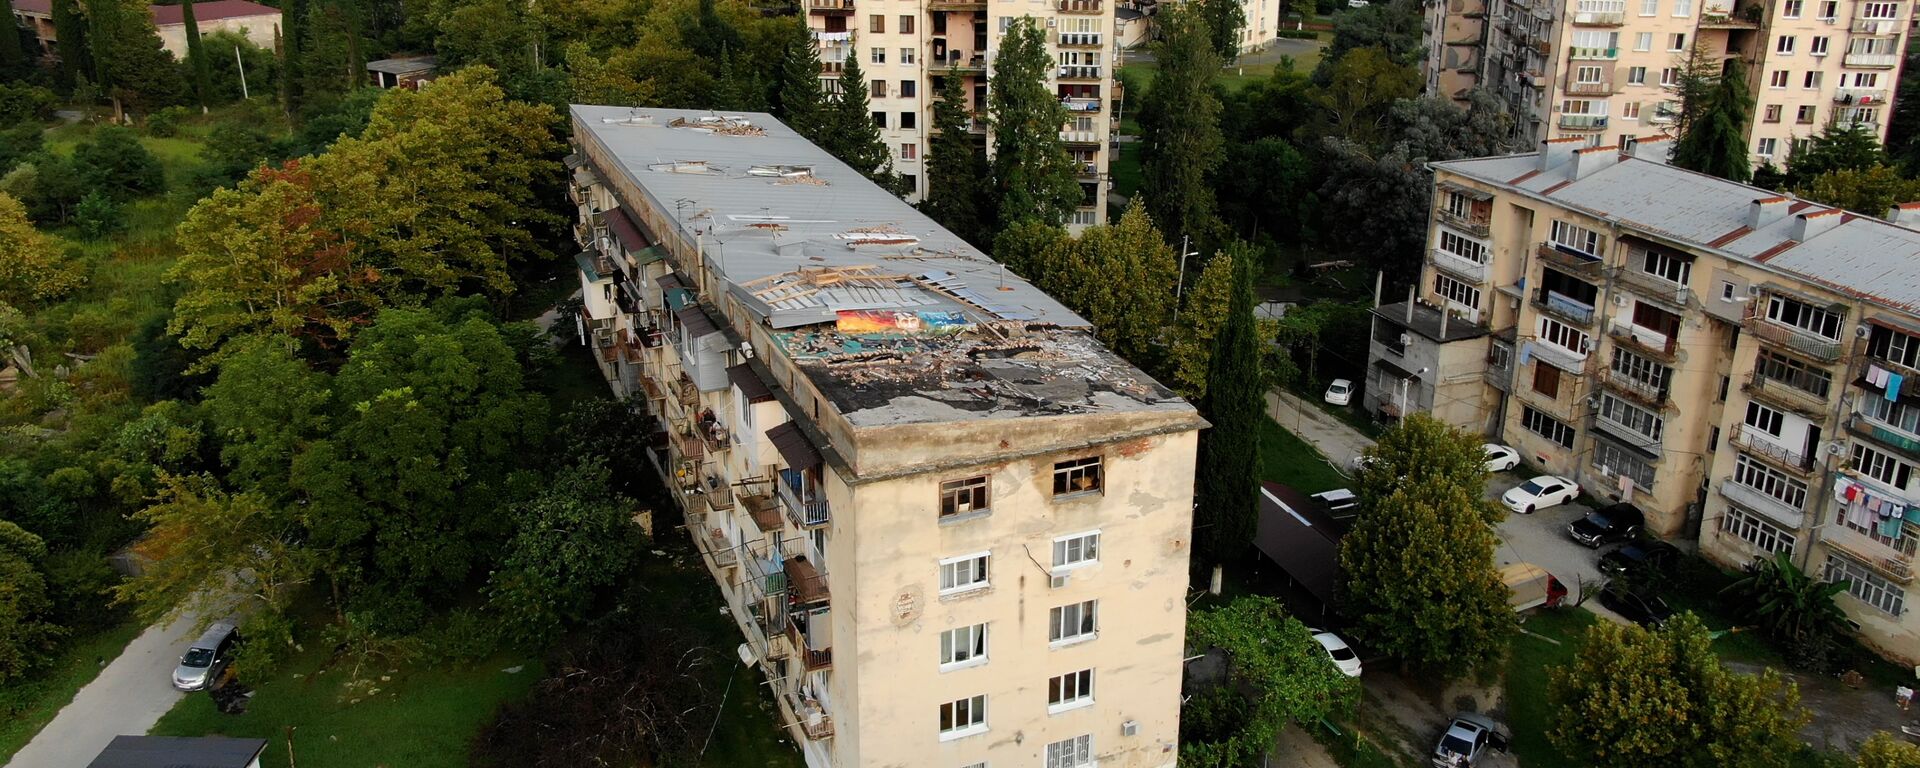 Пострадавший от ливней дом  по улице Гумистинская - Sputnik Абхазия, 1920, 24.08.2021